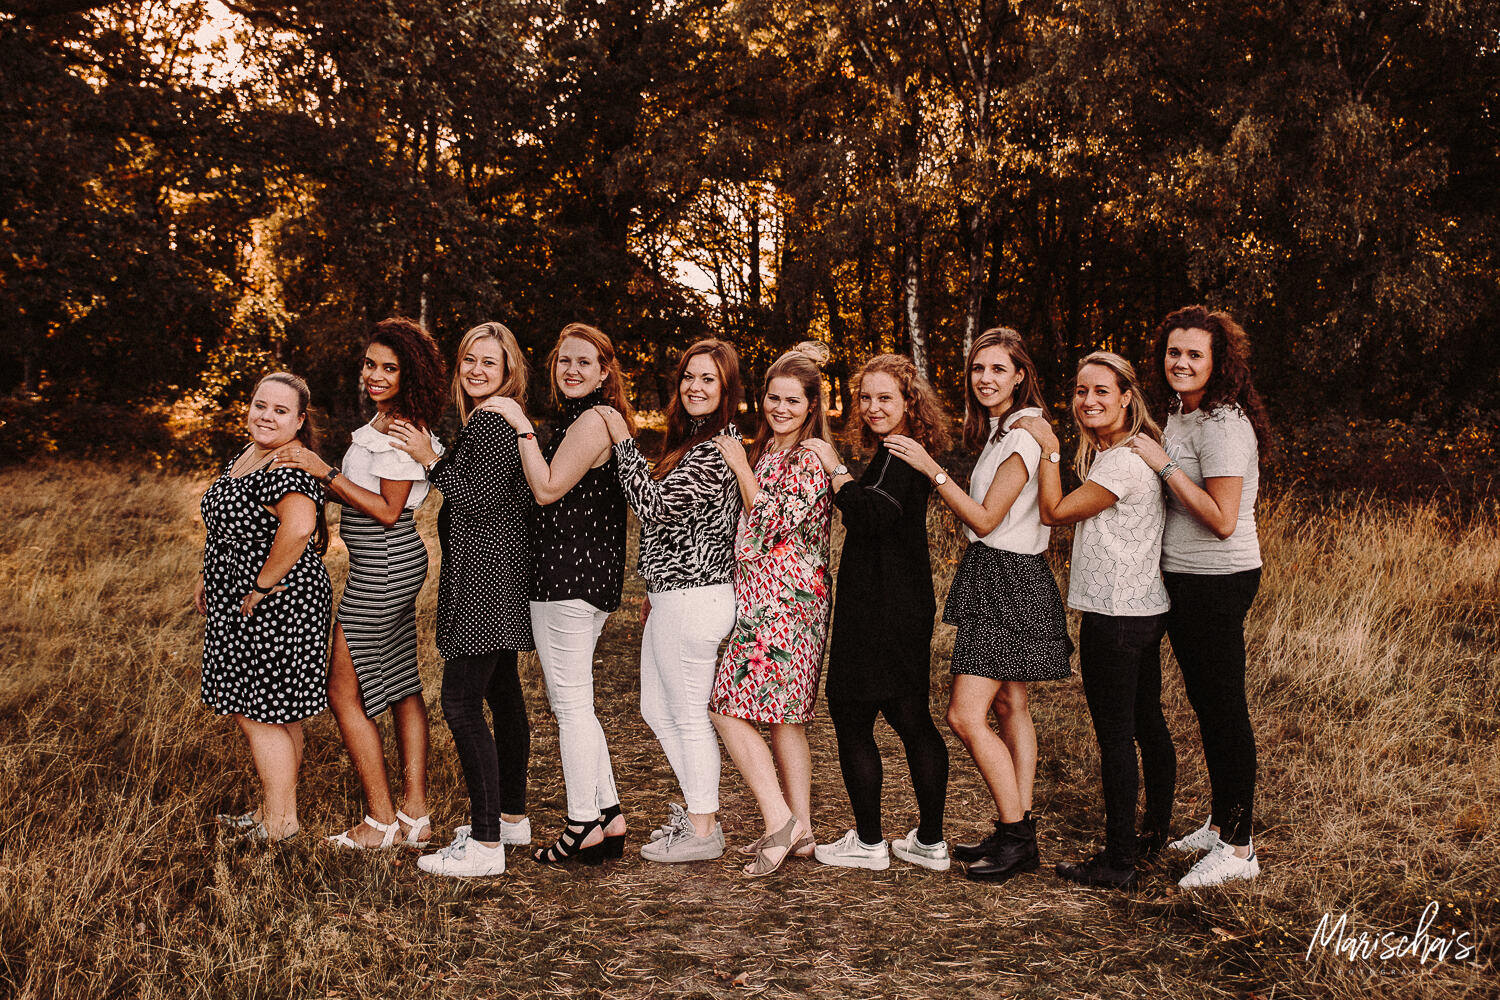 Vrijgezellenfeest fotoshoot met deze vriendinnen in het bos Limburg